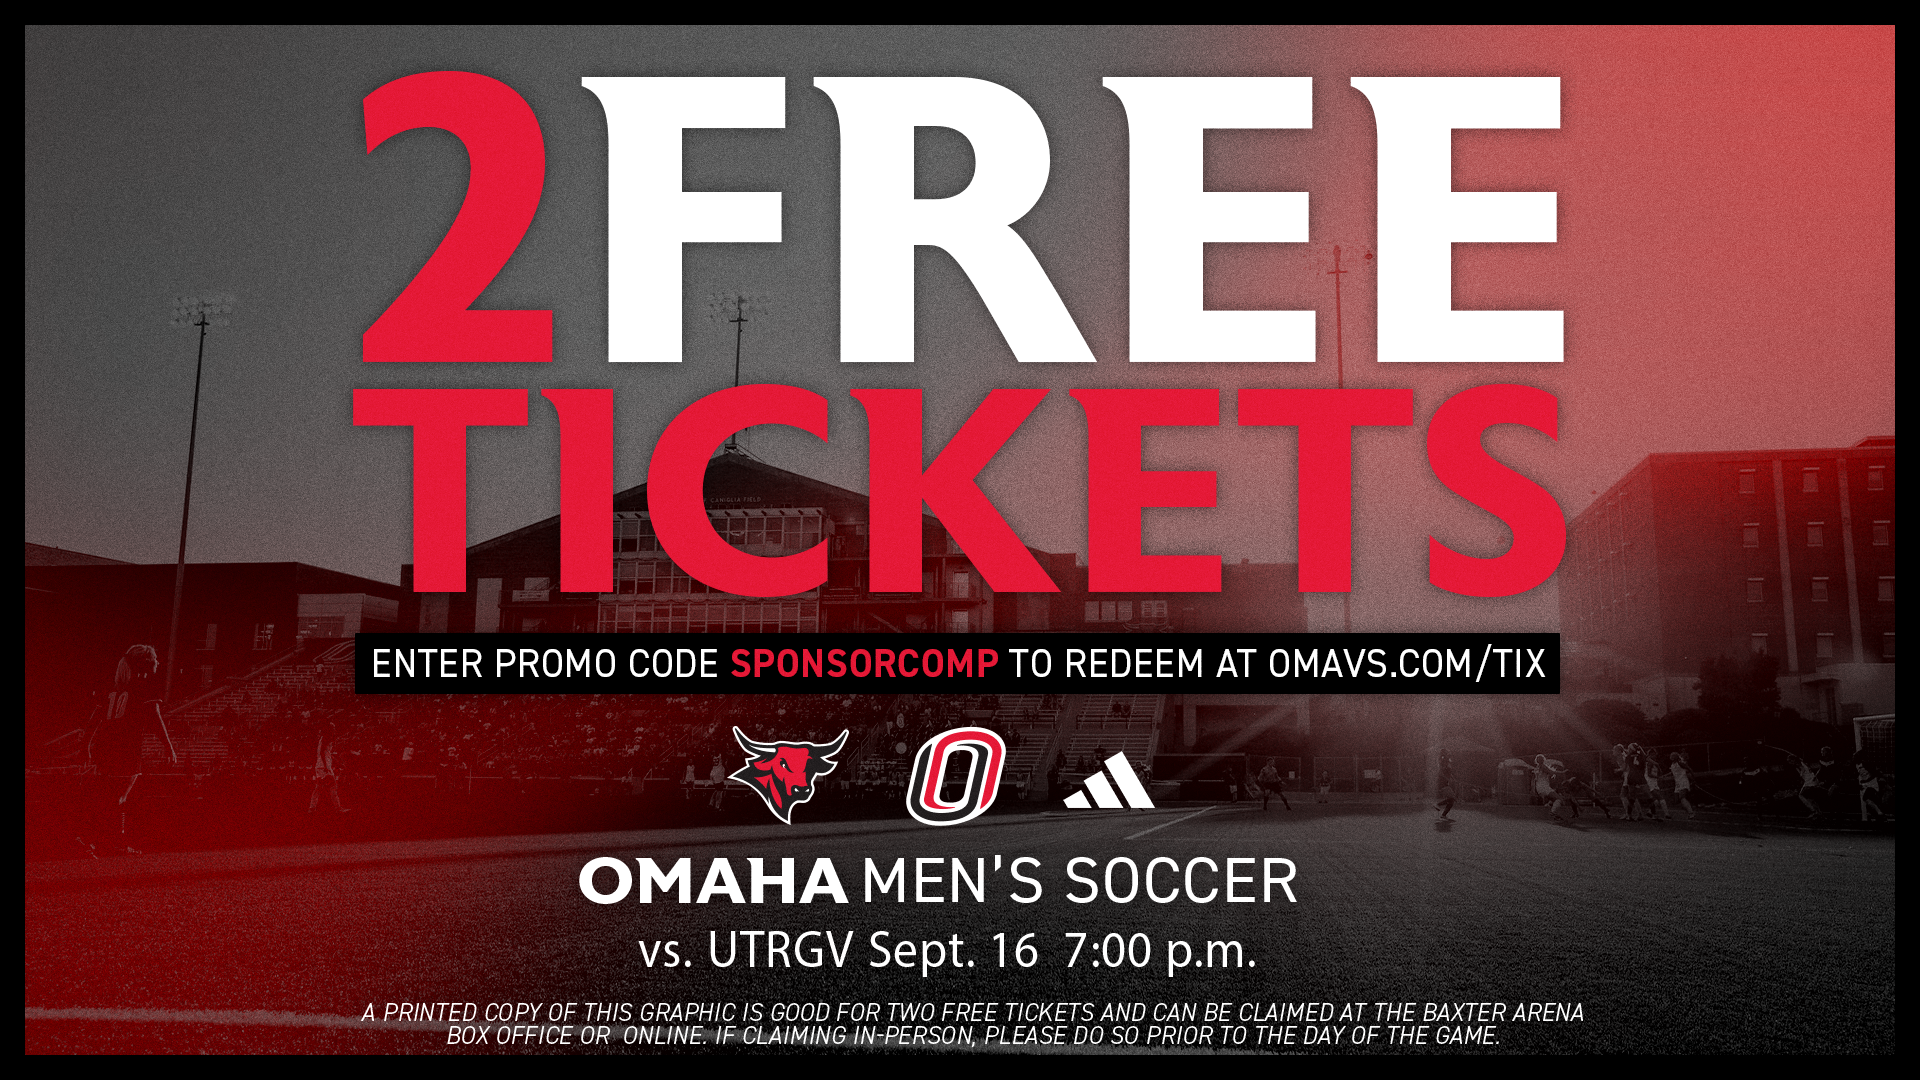 Omaha men's soccer ticket graphic